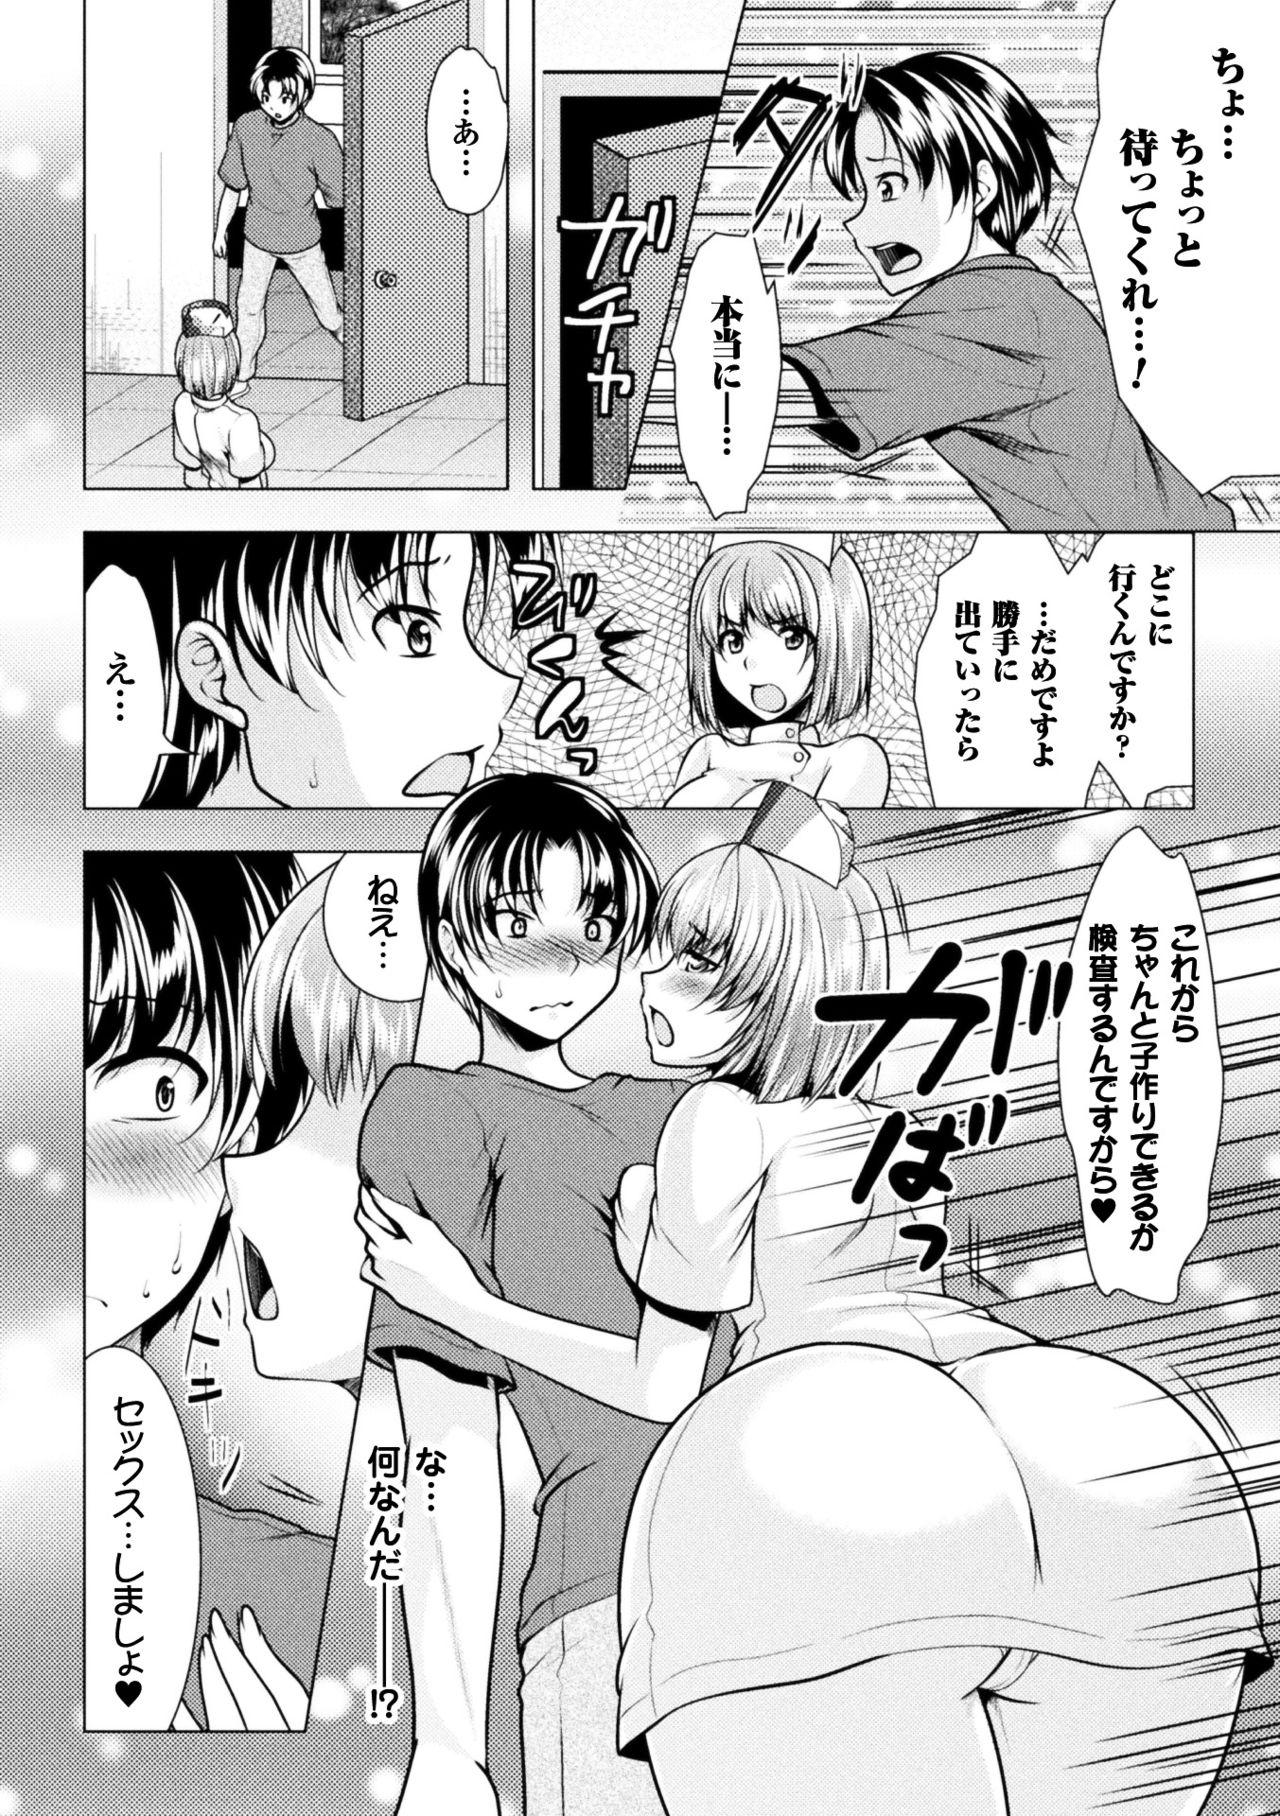 19yo 2D Comic Magazine Onna dake no Sekai de Boku wa mou Dame kamo Shirenai Vol.2 Culona - Page 8